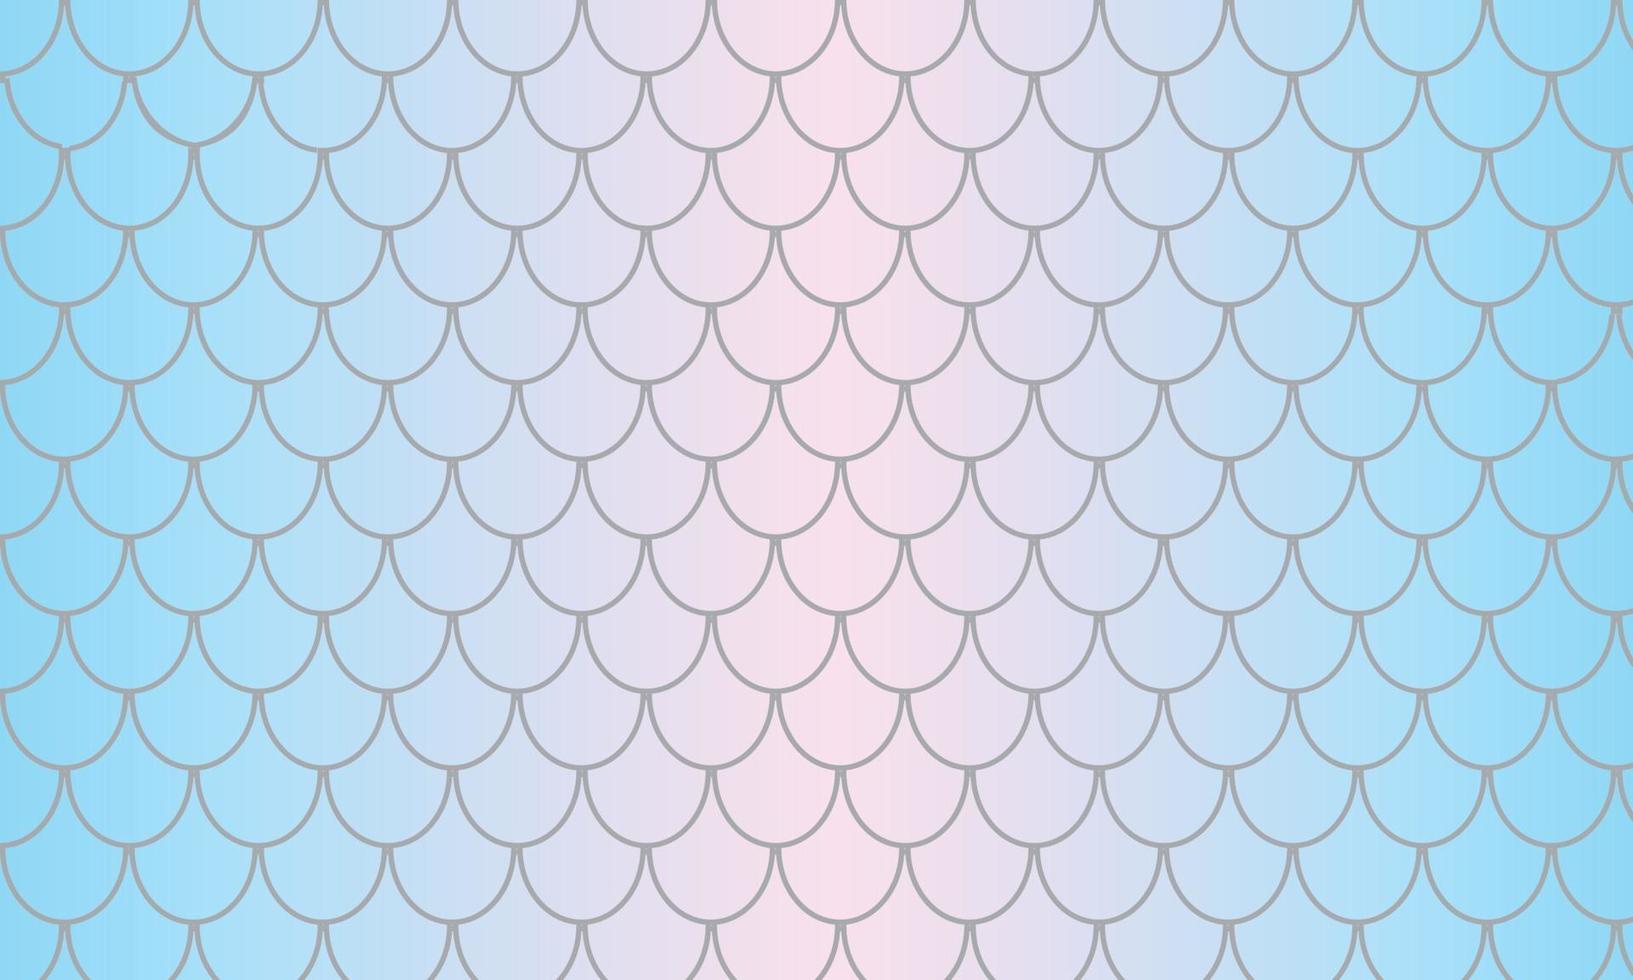 Fischschuppen blau und rosa Textur Hintergrund vektor